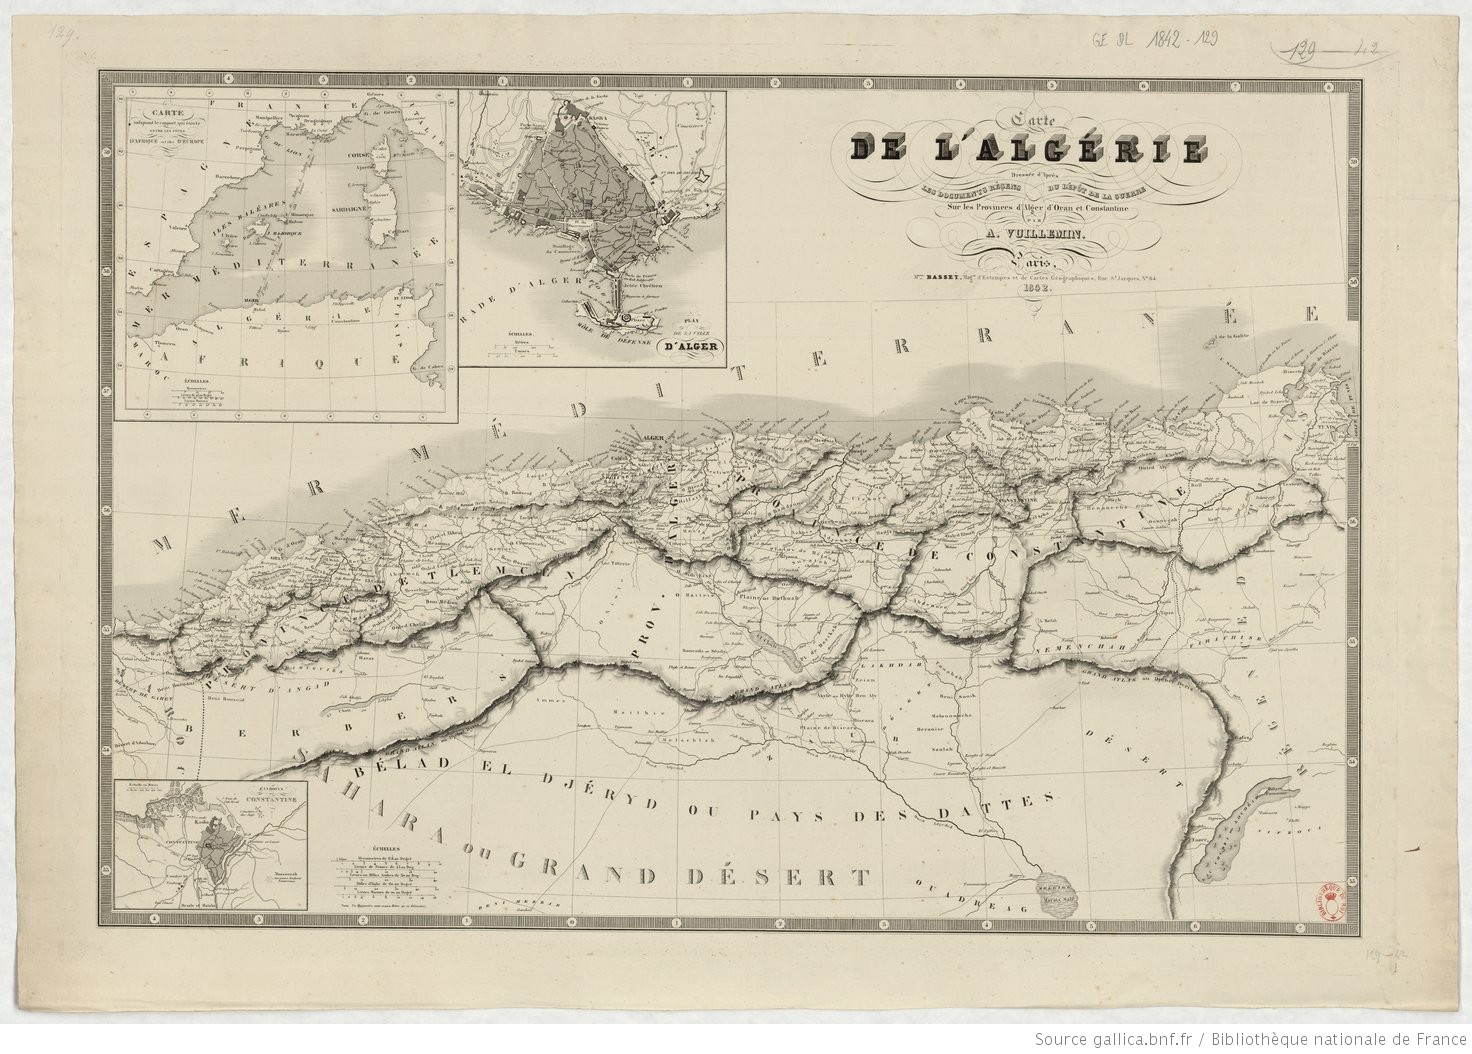 Carte de l'Algérie par A. Vuillemin 1842. © BNF - Gallica